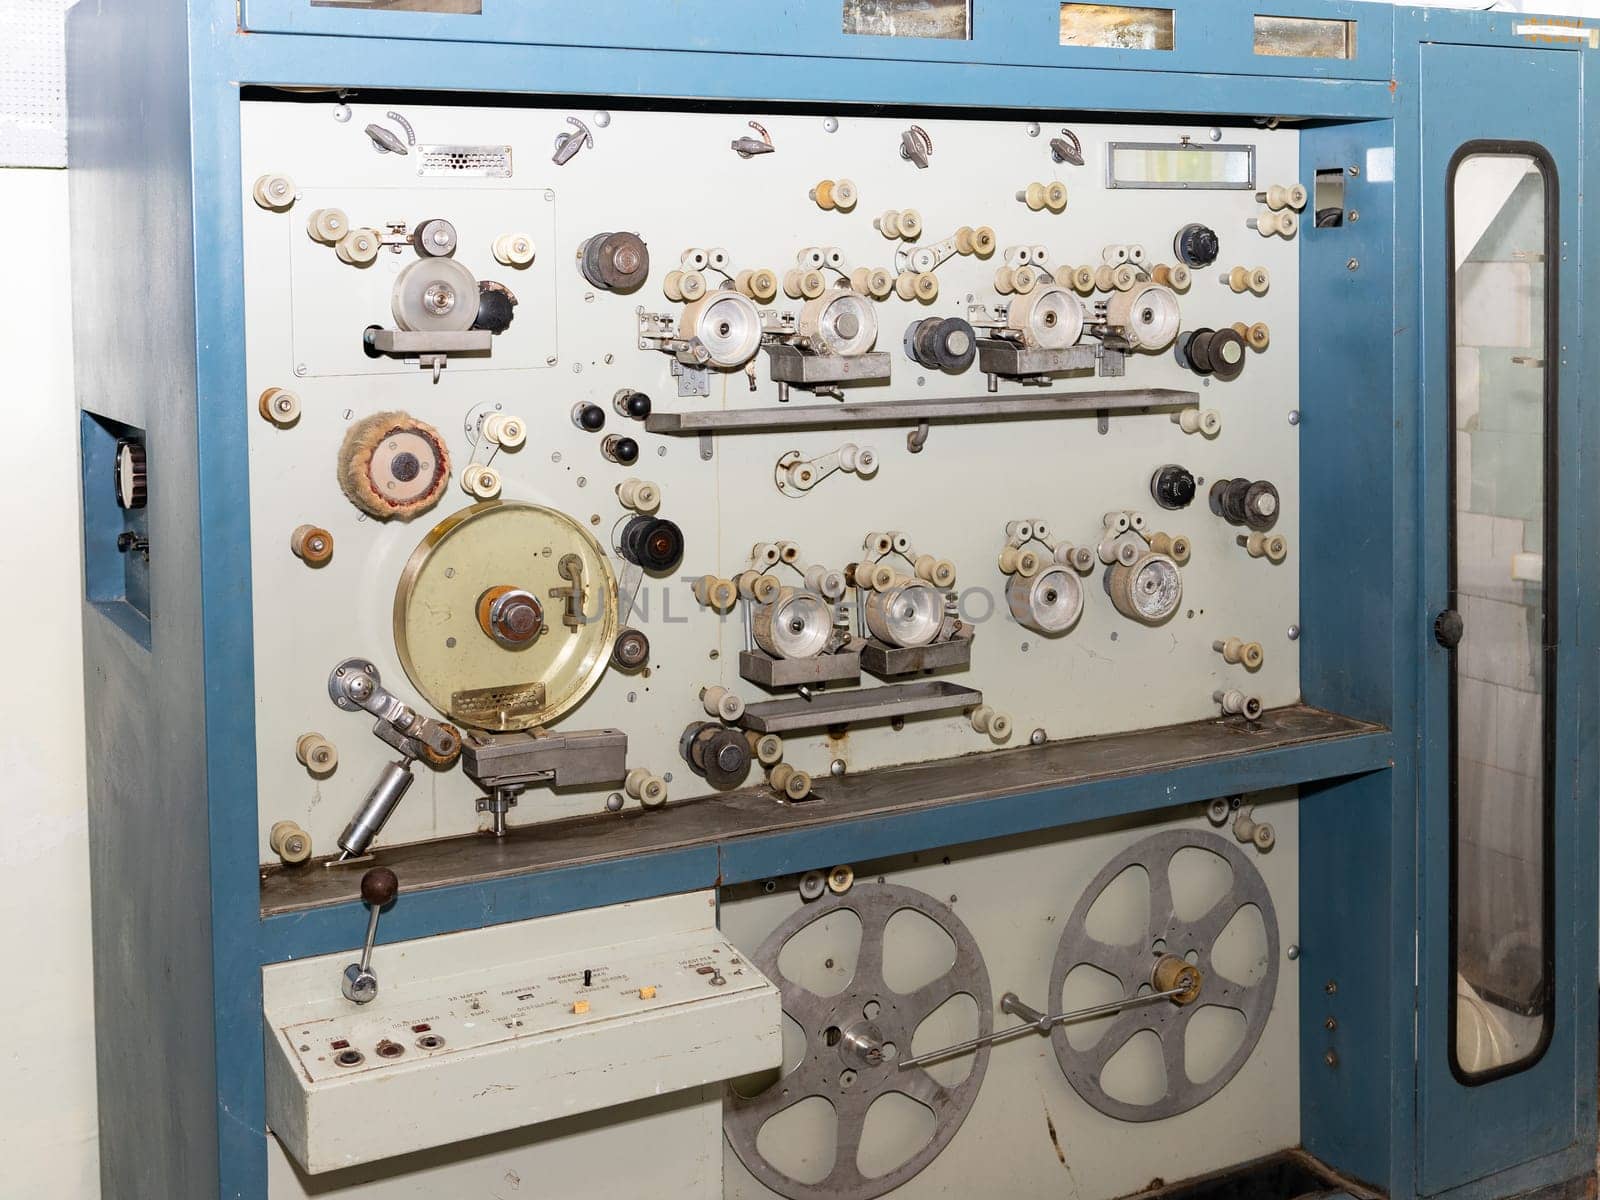 Vintage film repair and rewind machine by Serhii_Voroshchuk